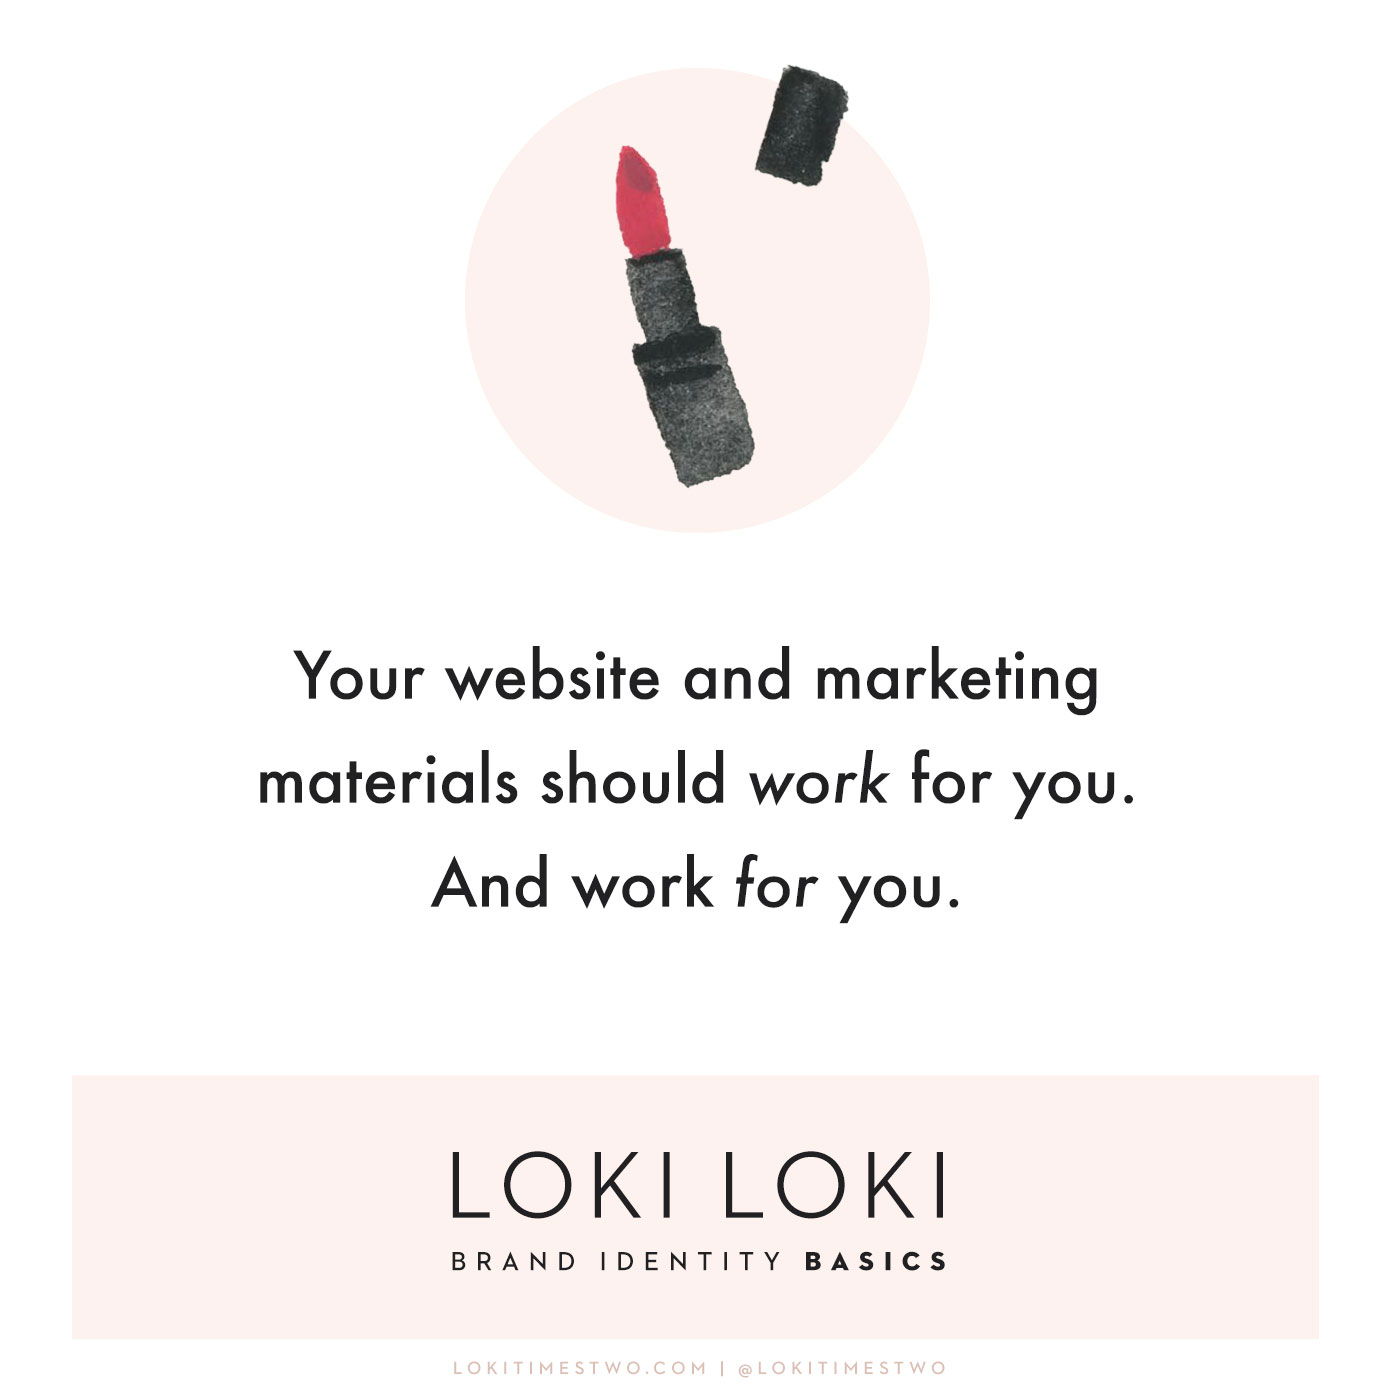 Loki Loki brand identity basics: red lipstick